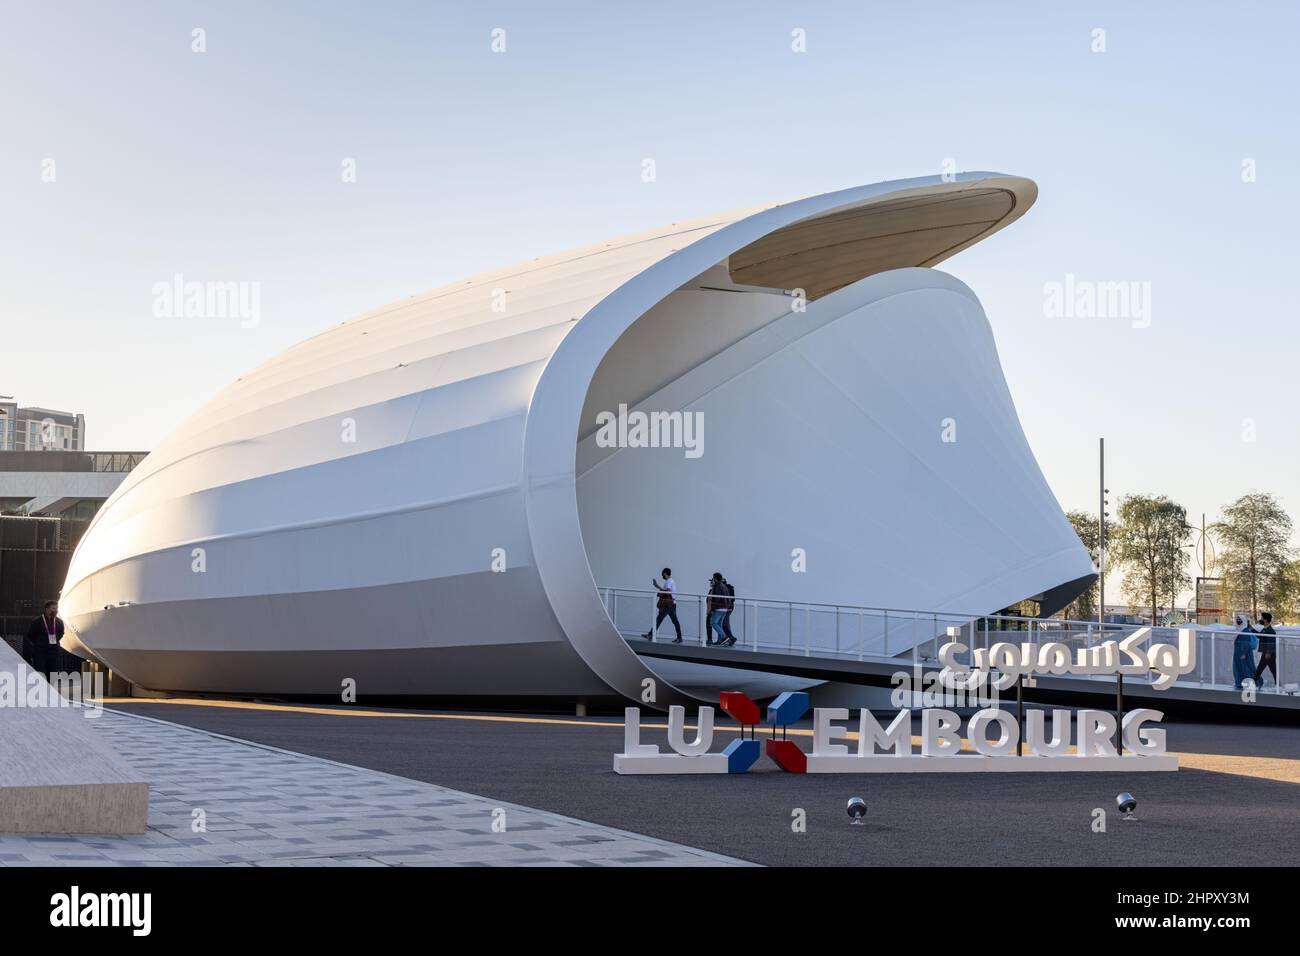 Futurista Pabellón de Luxemburgo en el distrito de Opportunity en la Dubai EXPO 2020 en los Emiratos Árabes Unidos. Foto de stock